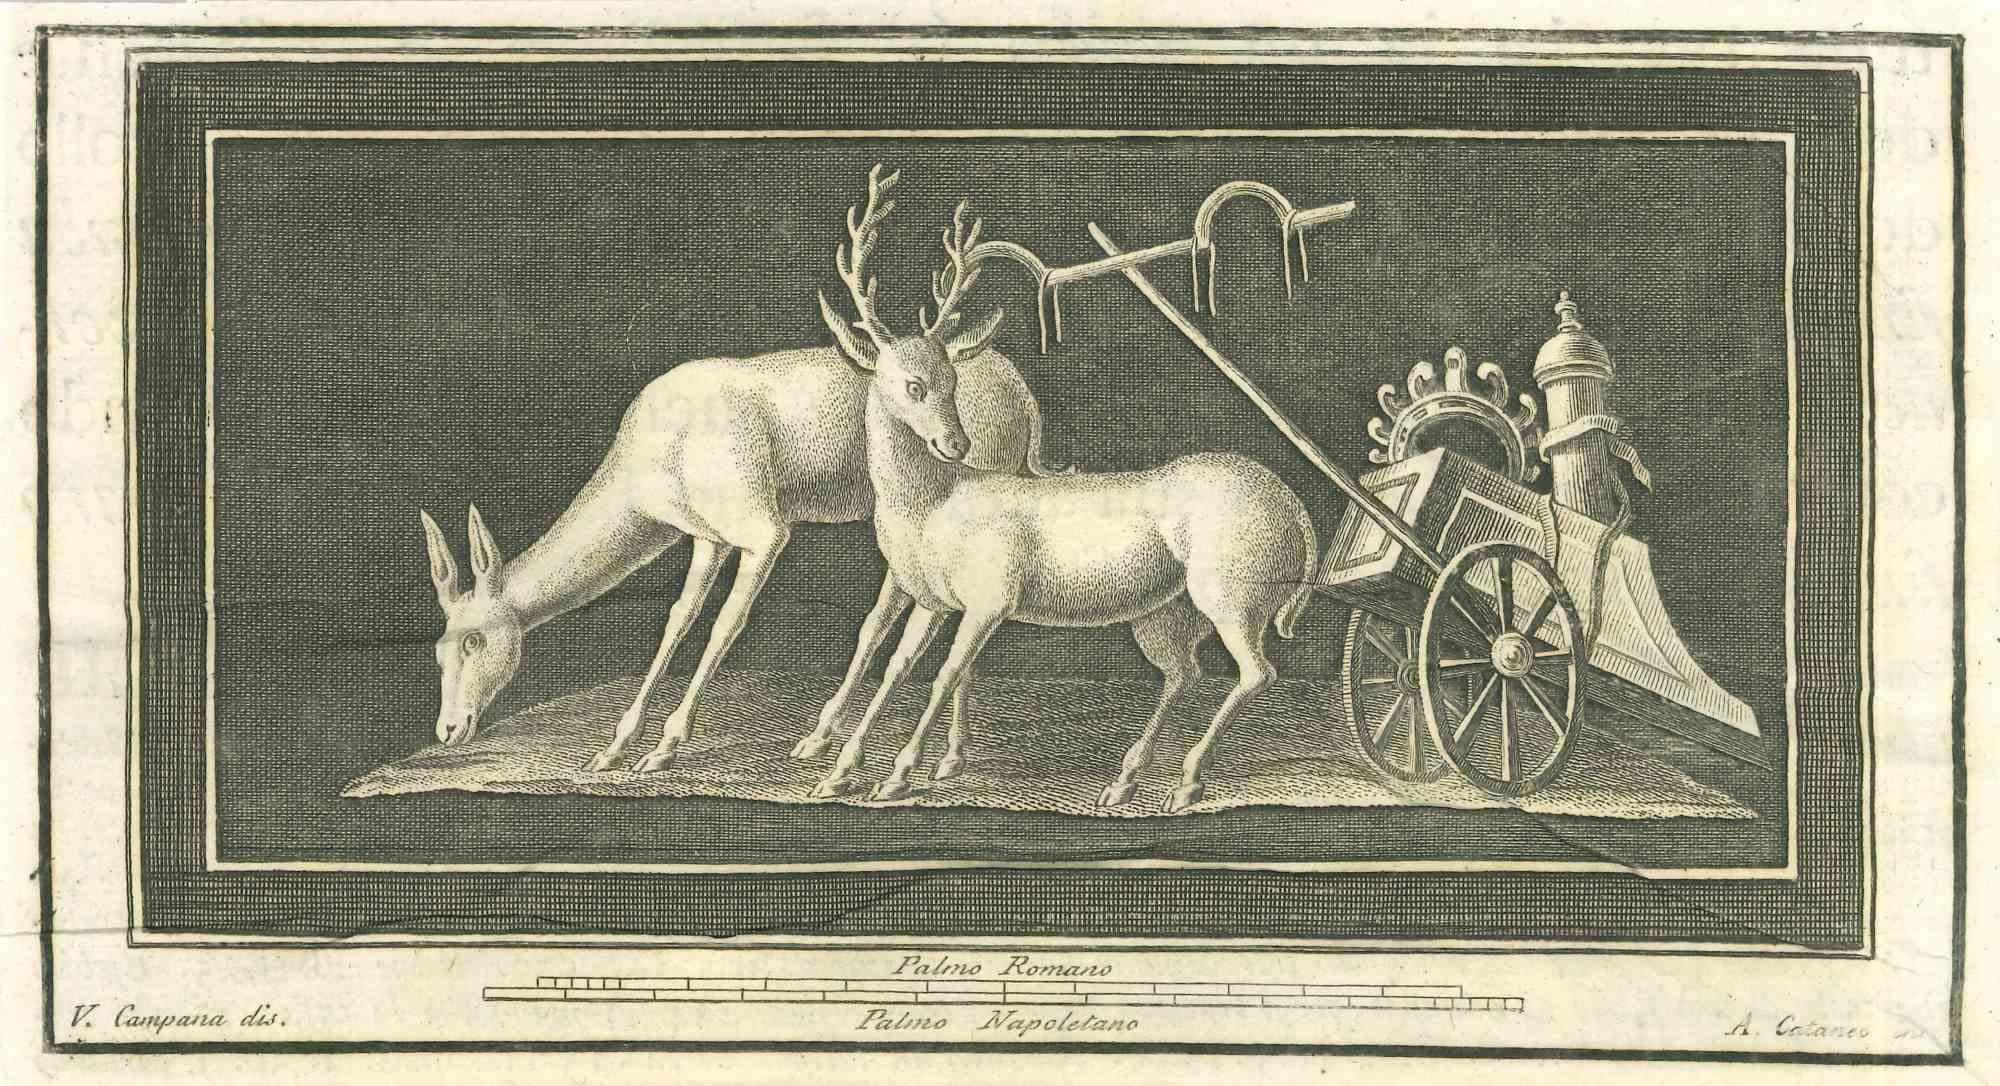 Animaux Pompéens Fresque des "Antiquités d'Herculanum" est une gravure sur papier réalisée par Aniello Cataneo au 18ème siècle.

Signé sur la plaque.

Bonnes conditions.

La gravure appartient à la suite d'estampes "Antiquités d'Herculanum exposées"